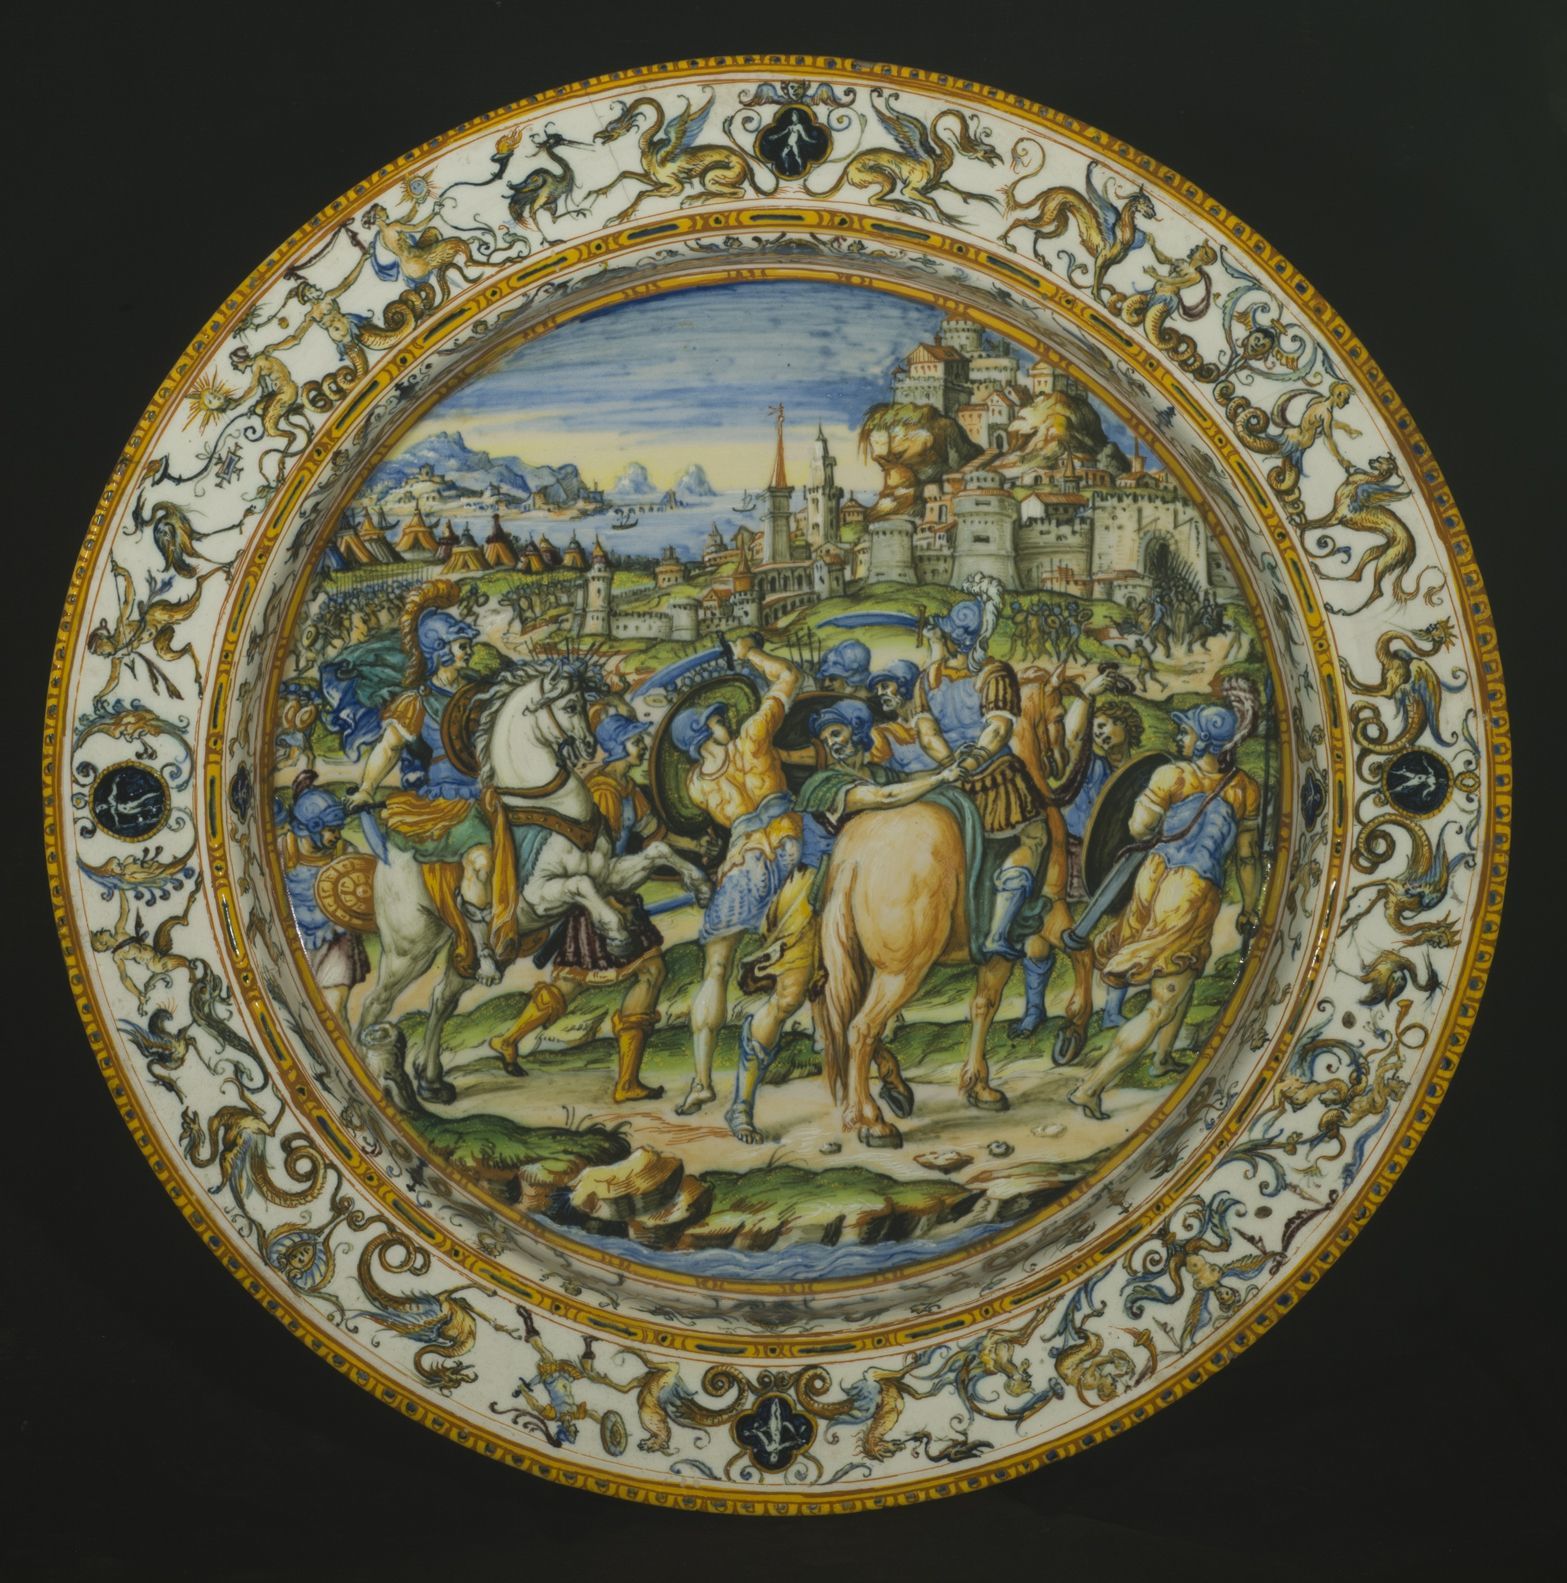 ウルビーノ窯、パタナッツィ工房	《市民を救うカエサル》が描かれた大皿 1580–90年頃 バルジェッロ美術館 © Gabinetto Fotografico delle Gallerie degli Uffizi